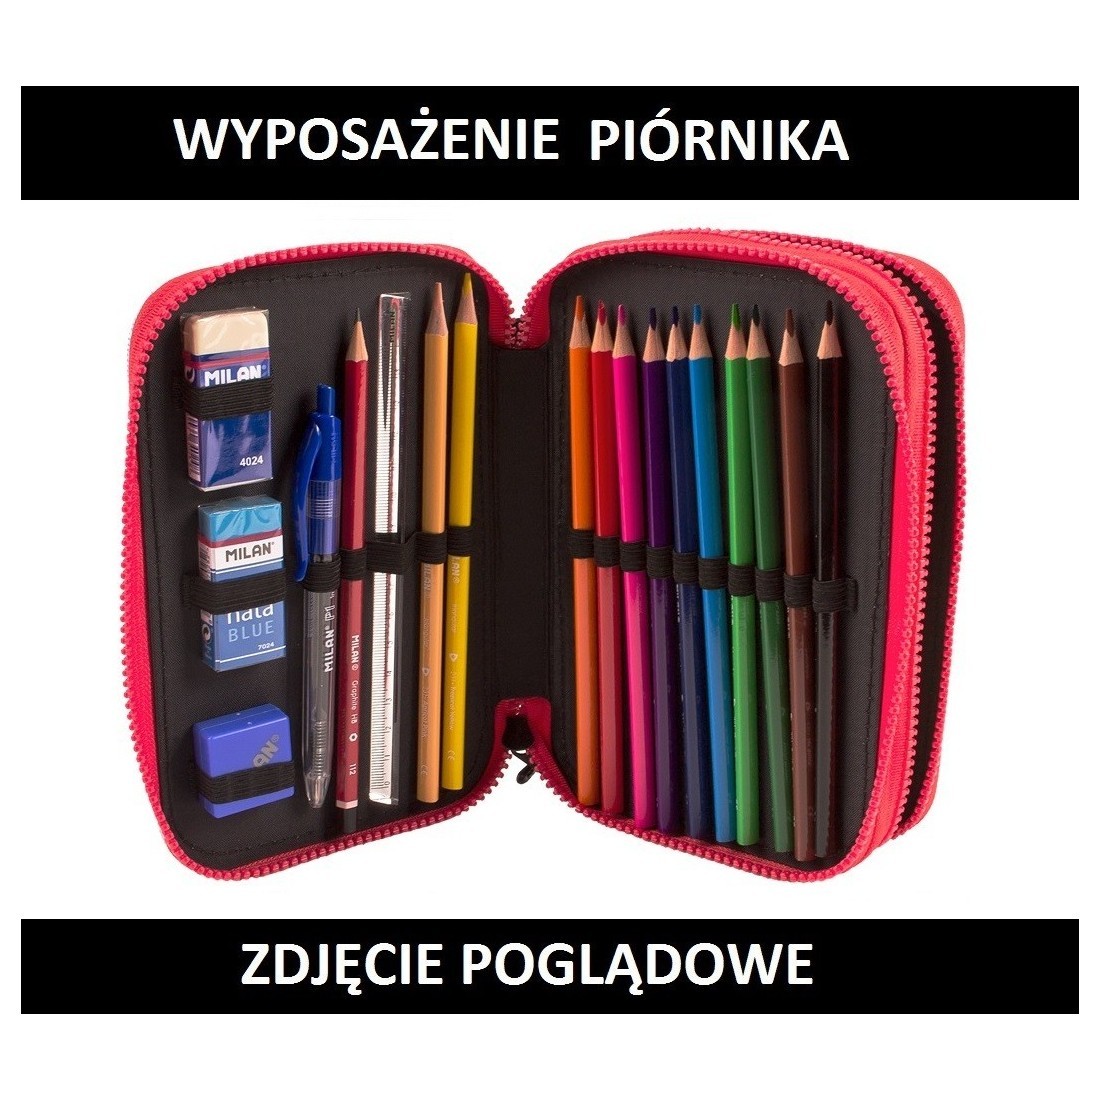 Piórnik MILAN na dwa zamki z wyposażeniem - różowy w trójkąty z kieszonką - GEO - plecak-tornister.pl